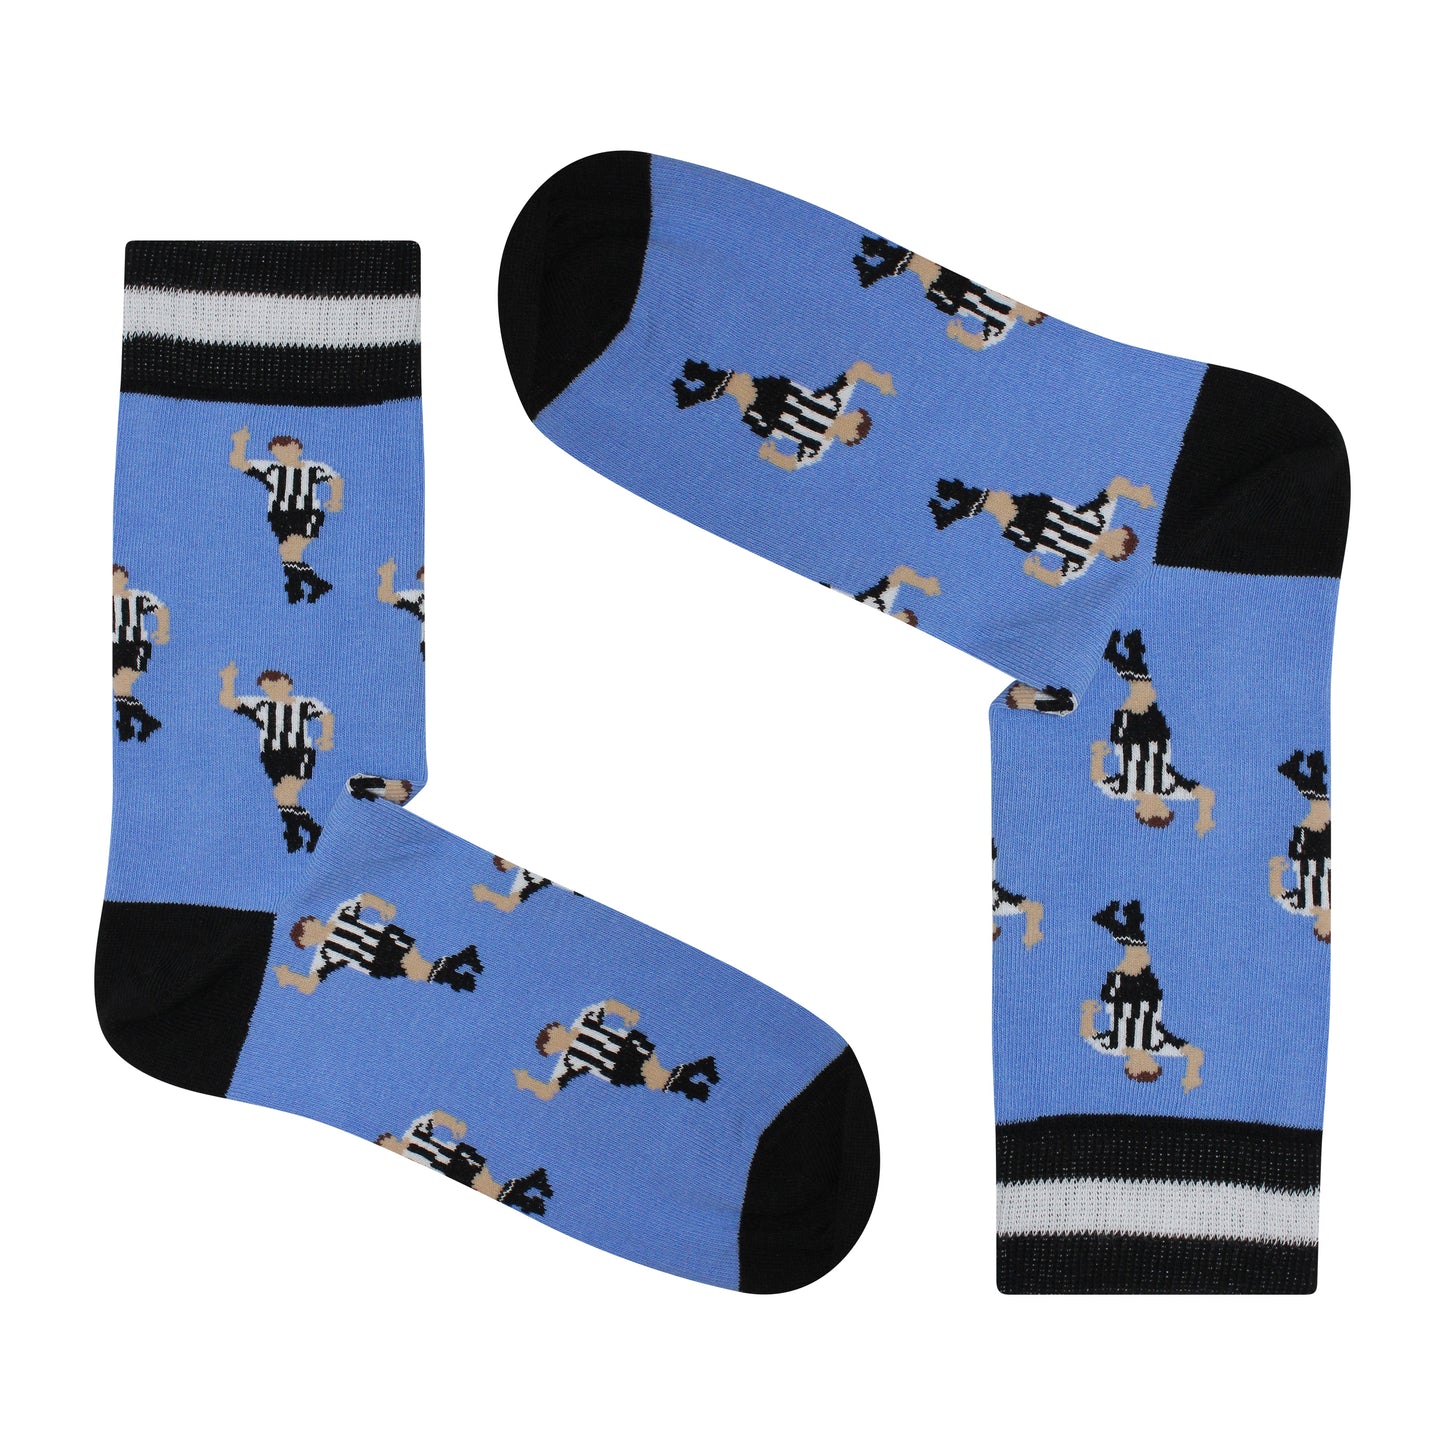 Shearer Celebration Tribute | Retro Shirt Socks | Blue | Size UK 7 - 11